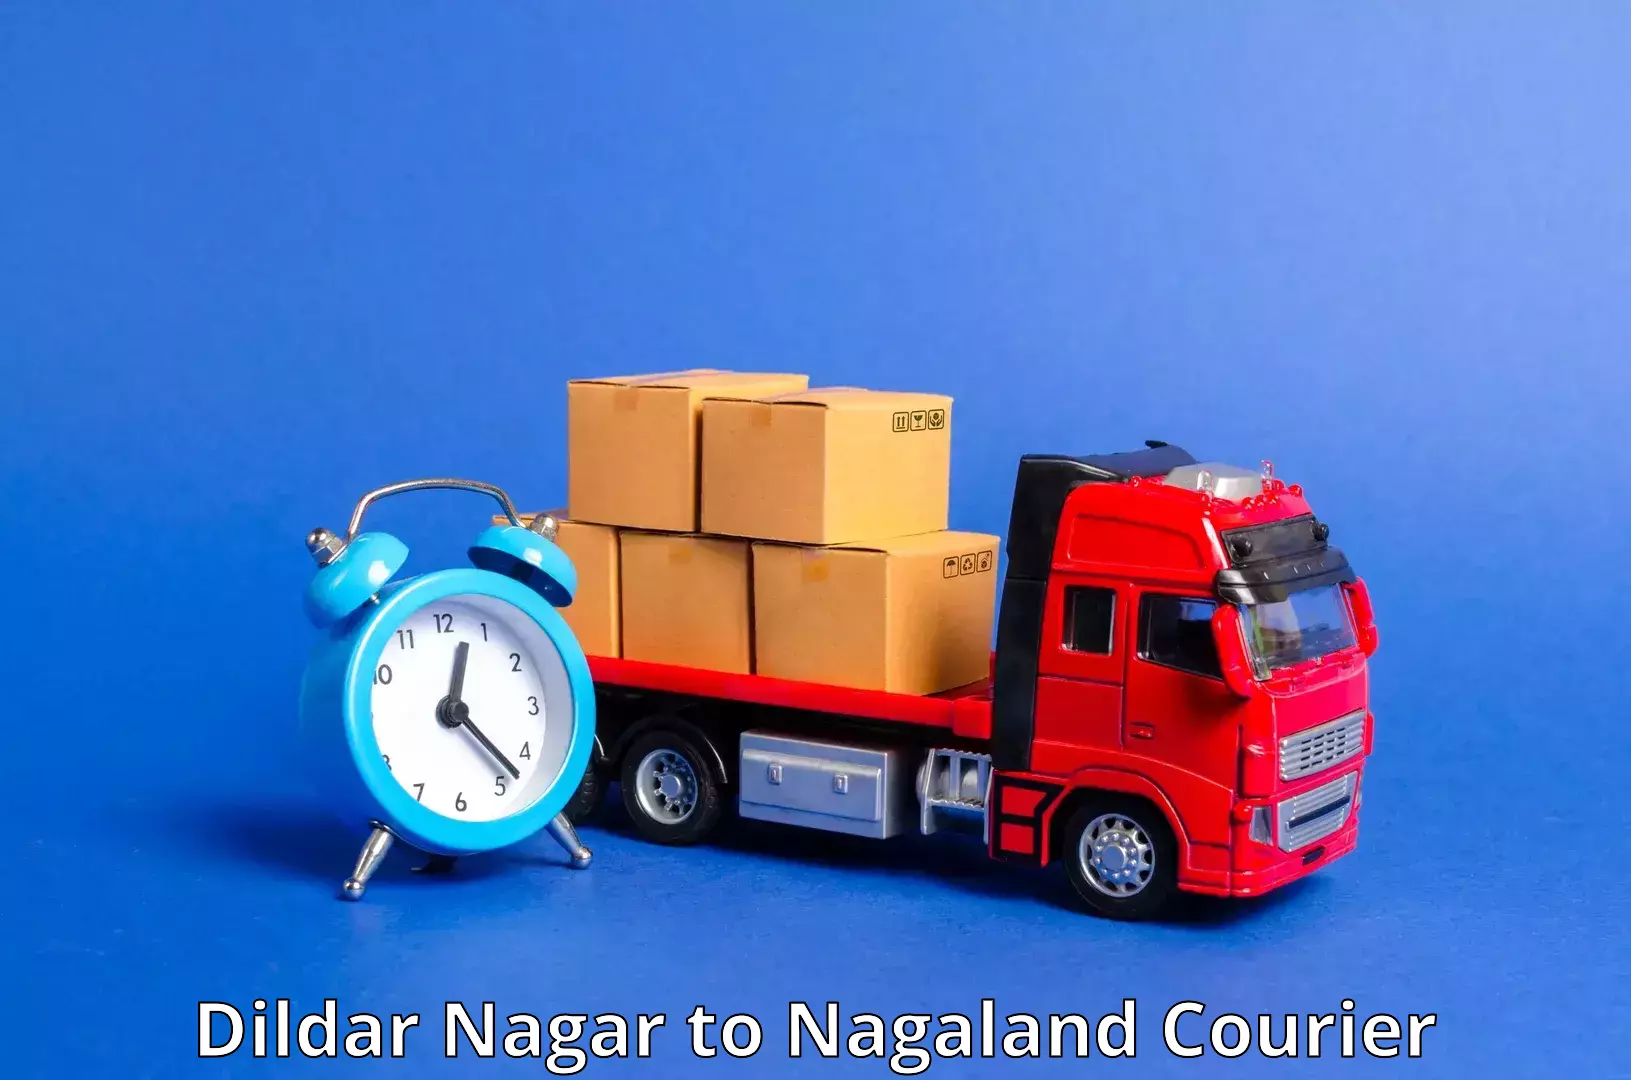 High-performance logistics Dildar Nagar to Longleng